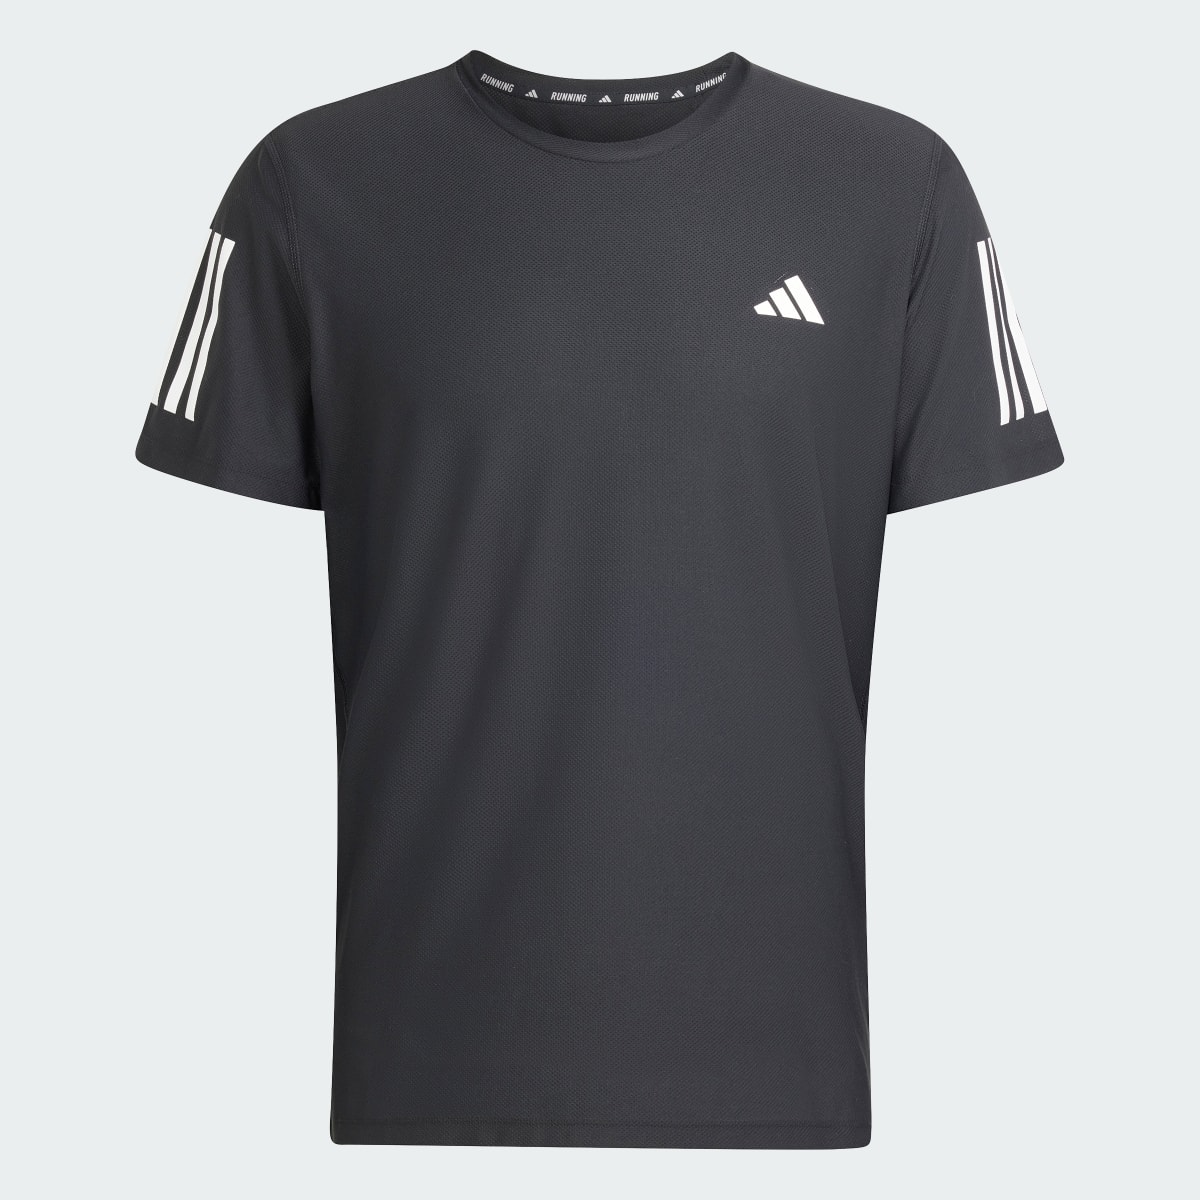 Adidas Own the Run T-Shirt. 5